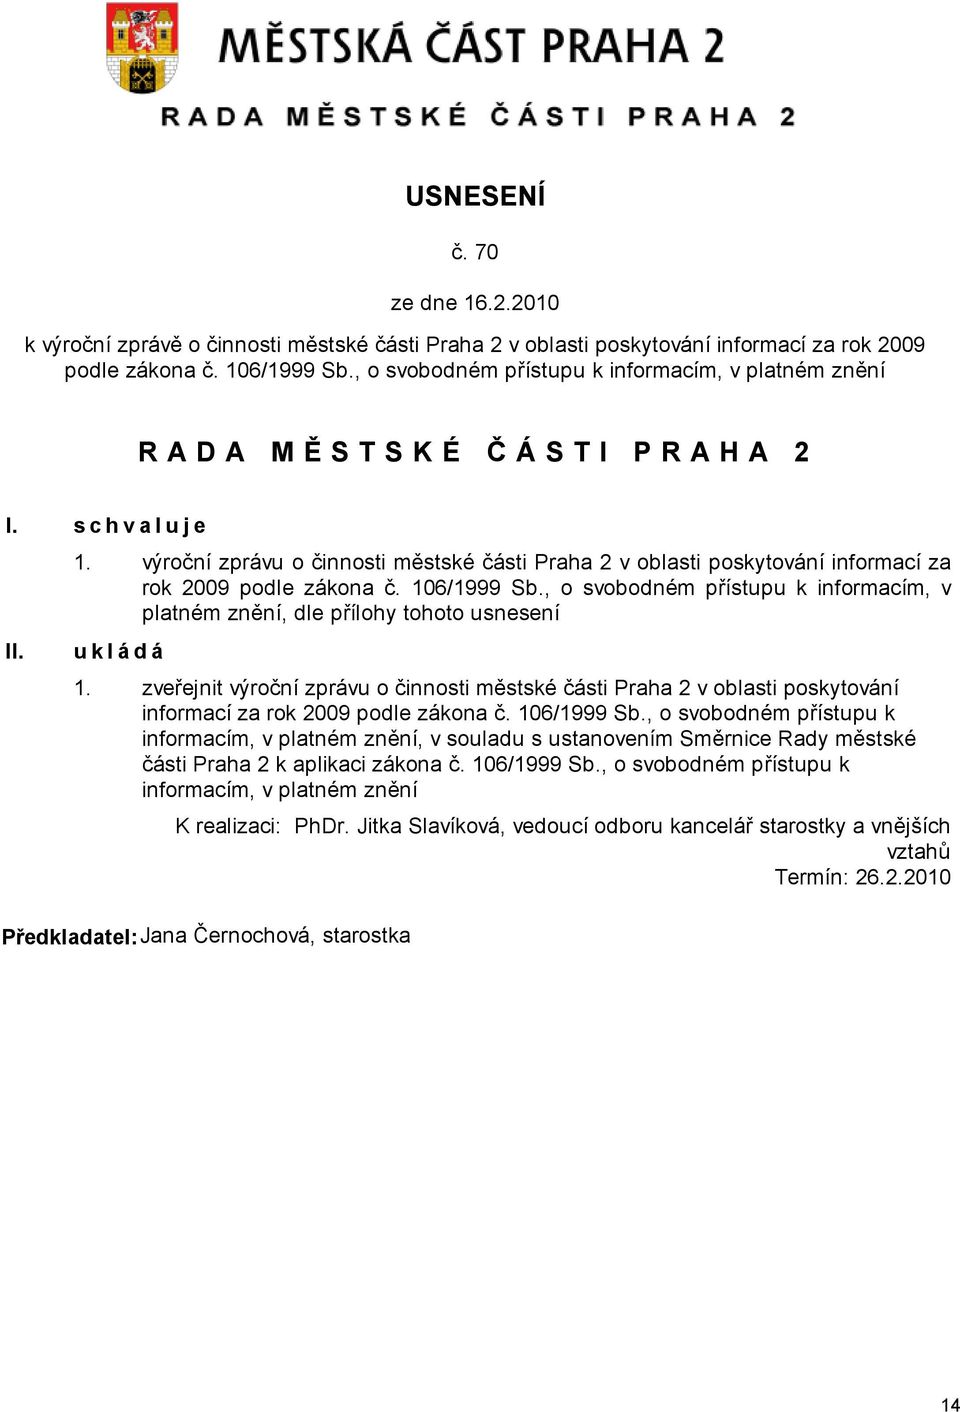 výroční zprávu o činnosti městské části Praha 2 v oblasti poskytování informací za rok 2009 podle zákona č. 106/1999 Sb.